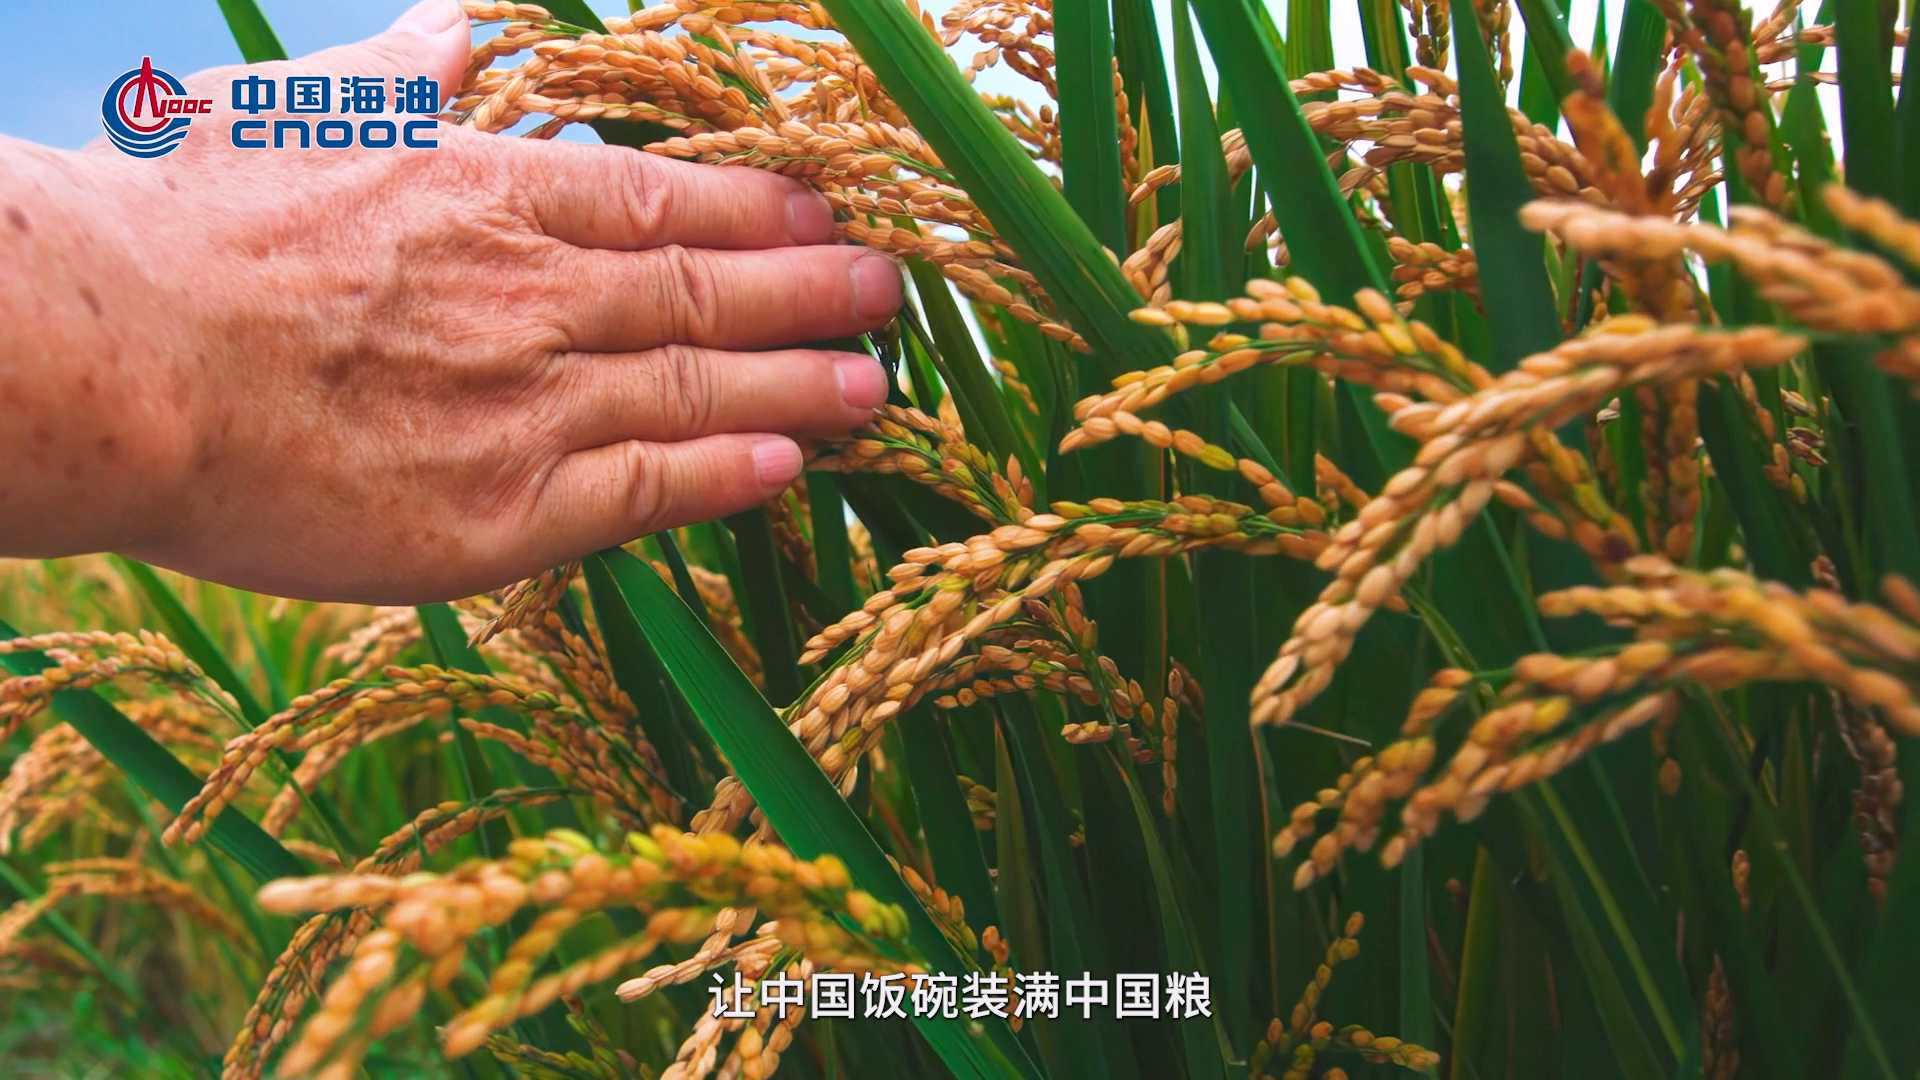 【专题片】中海石油化学股份有限公司 化肥保供稳价